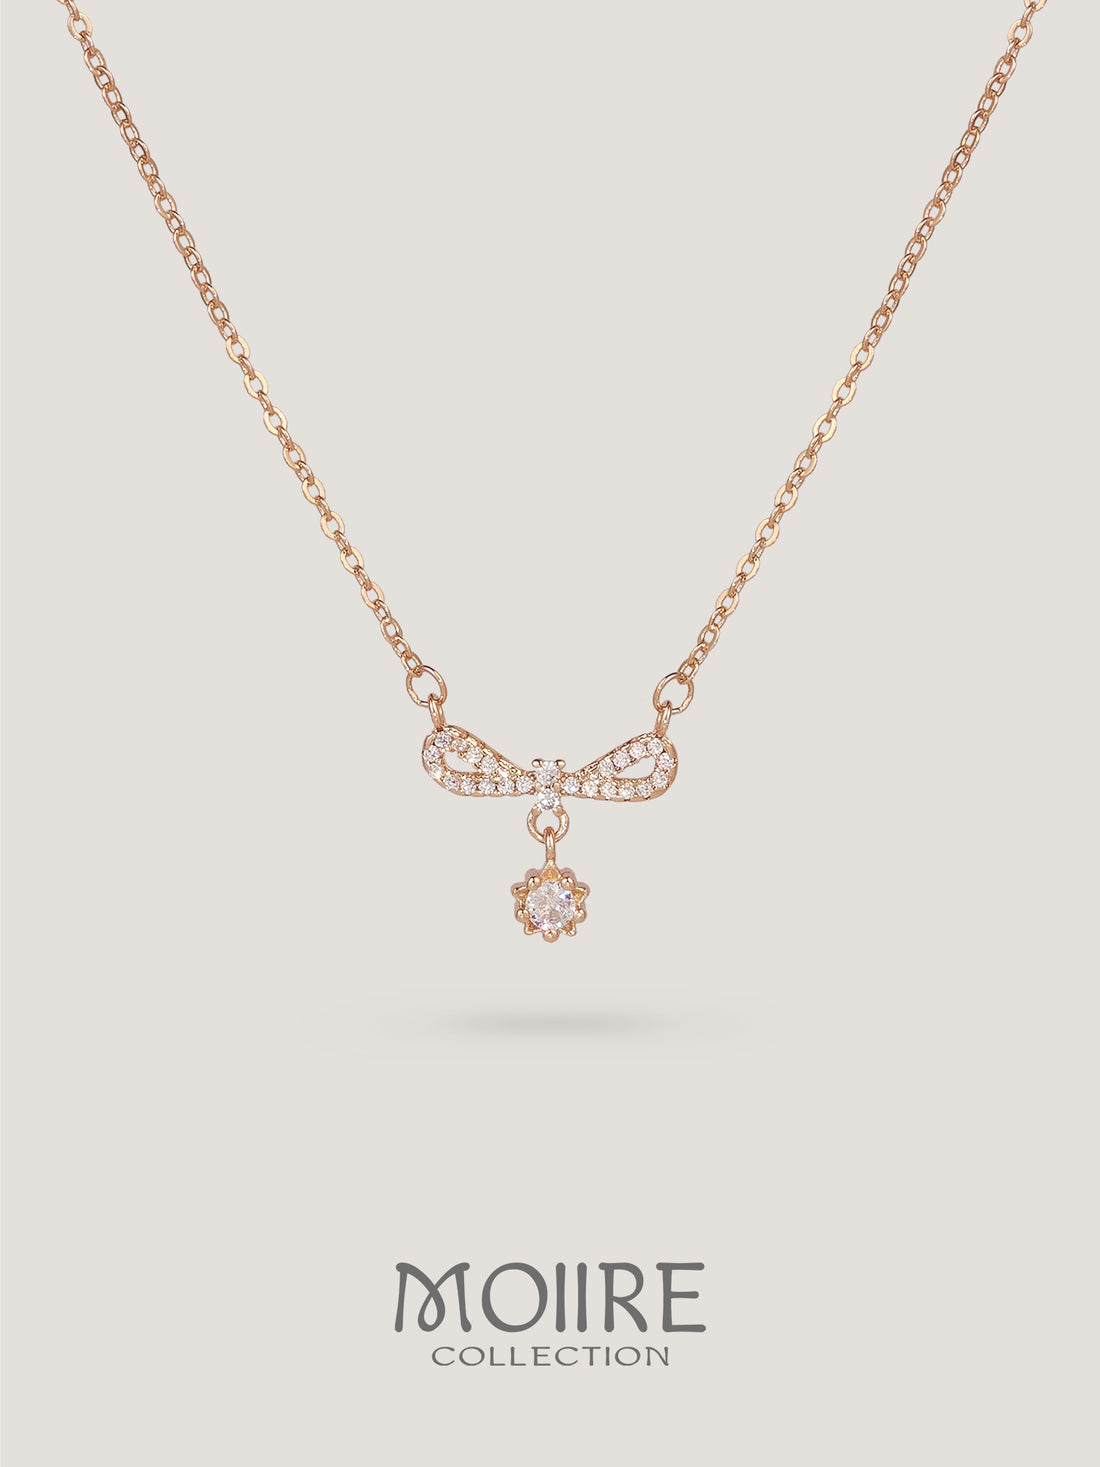 Moiire Jewelry | 你的星願